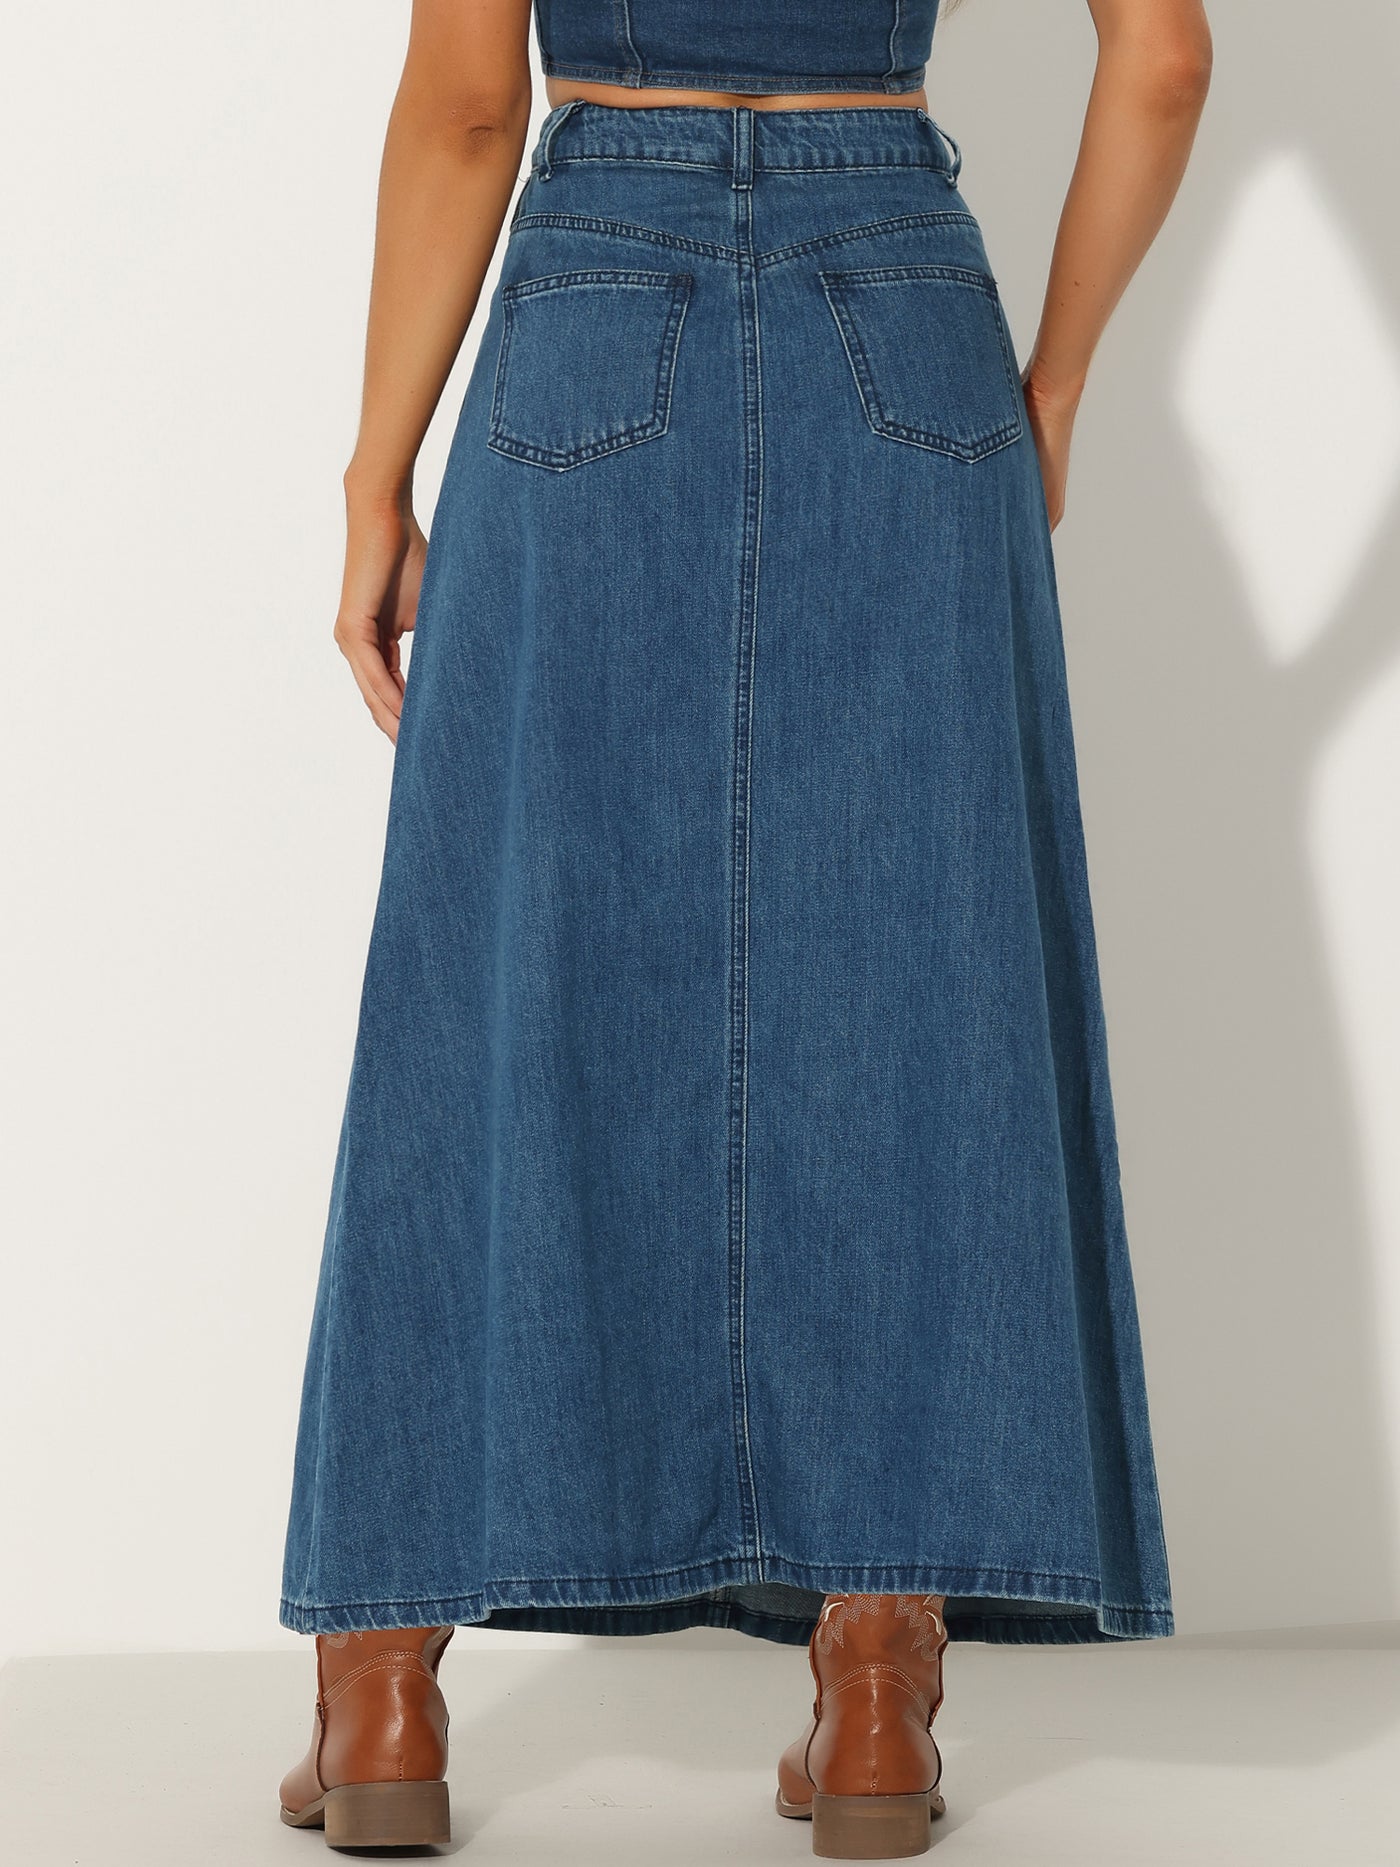 Allegra K Casual High Waisted Flap Pocket A-Line Long Denim Jean Skirt